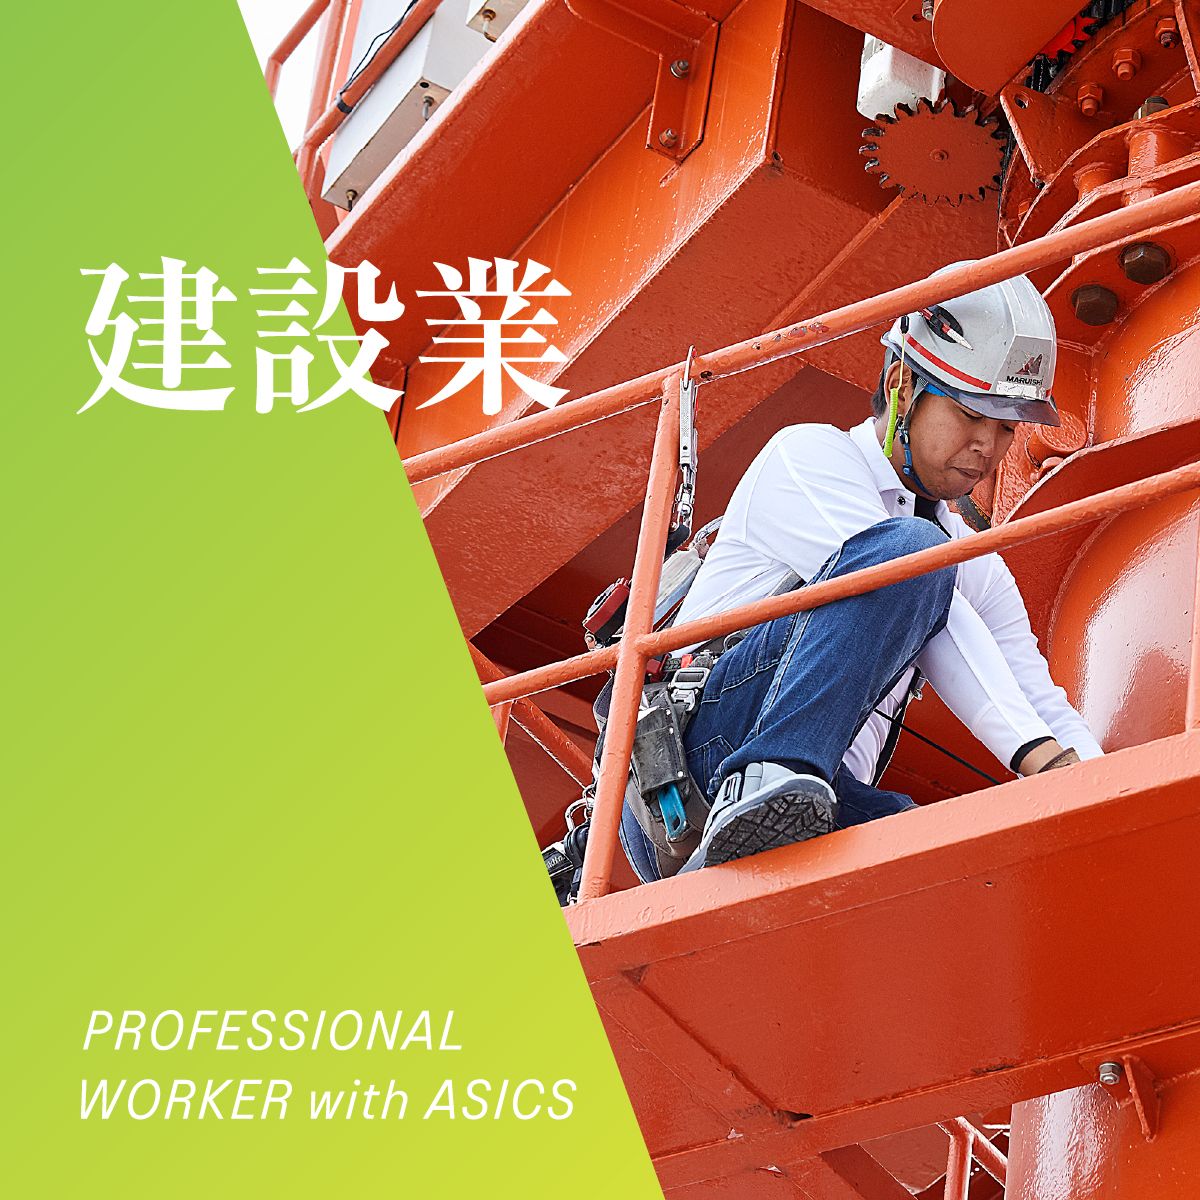 建設業 PROFESSIONAL WORKER with ASICS